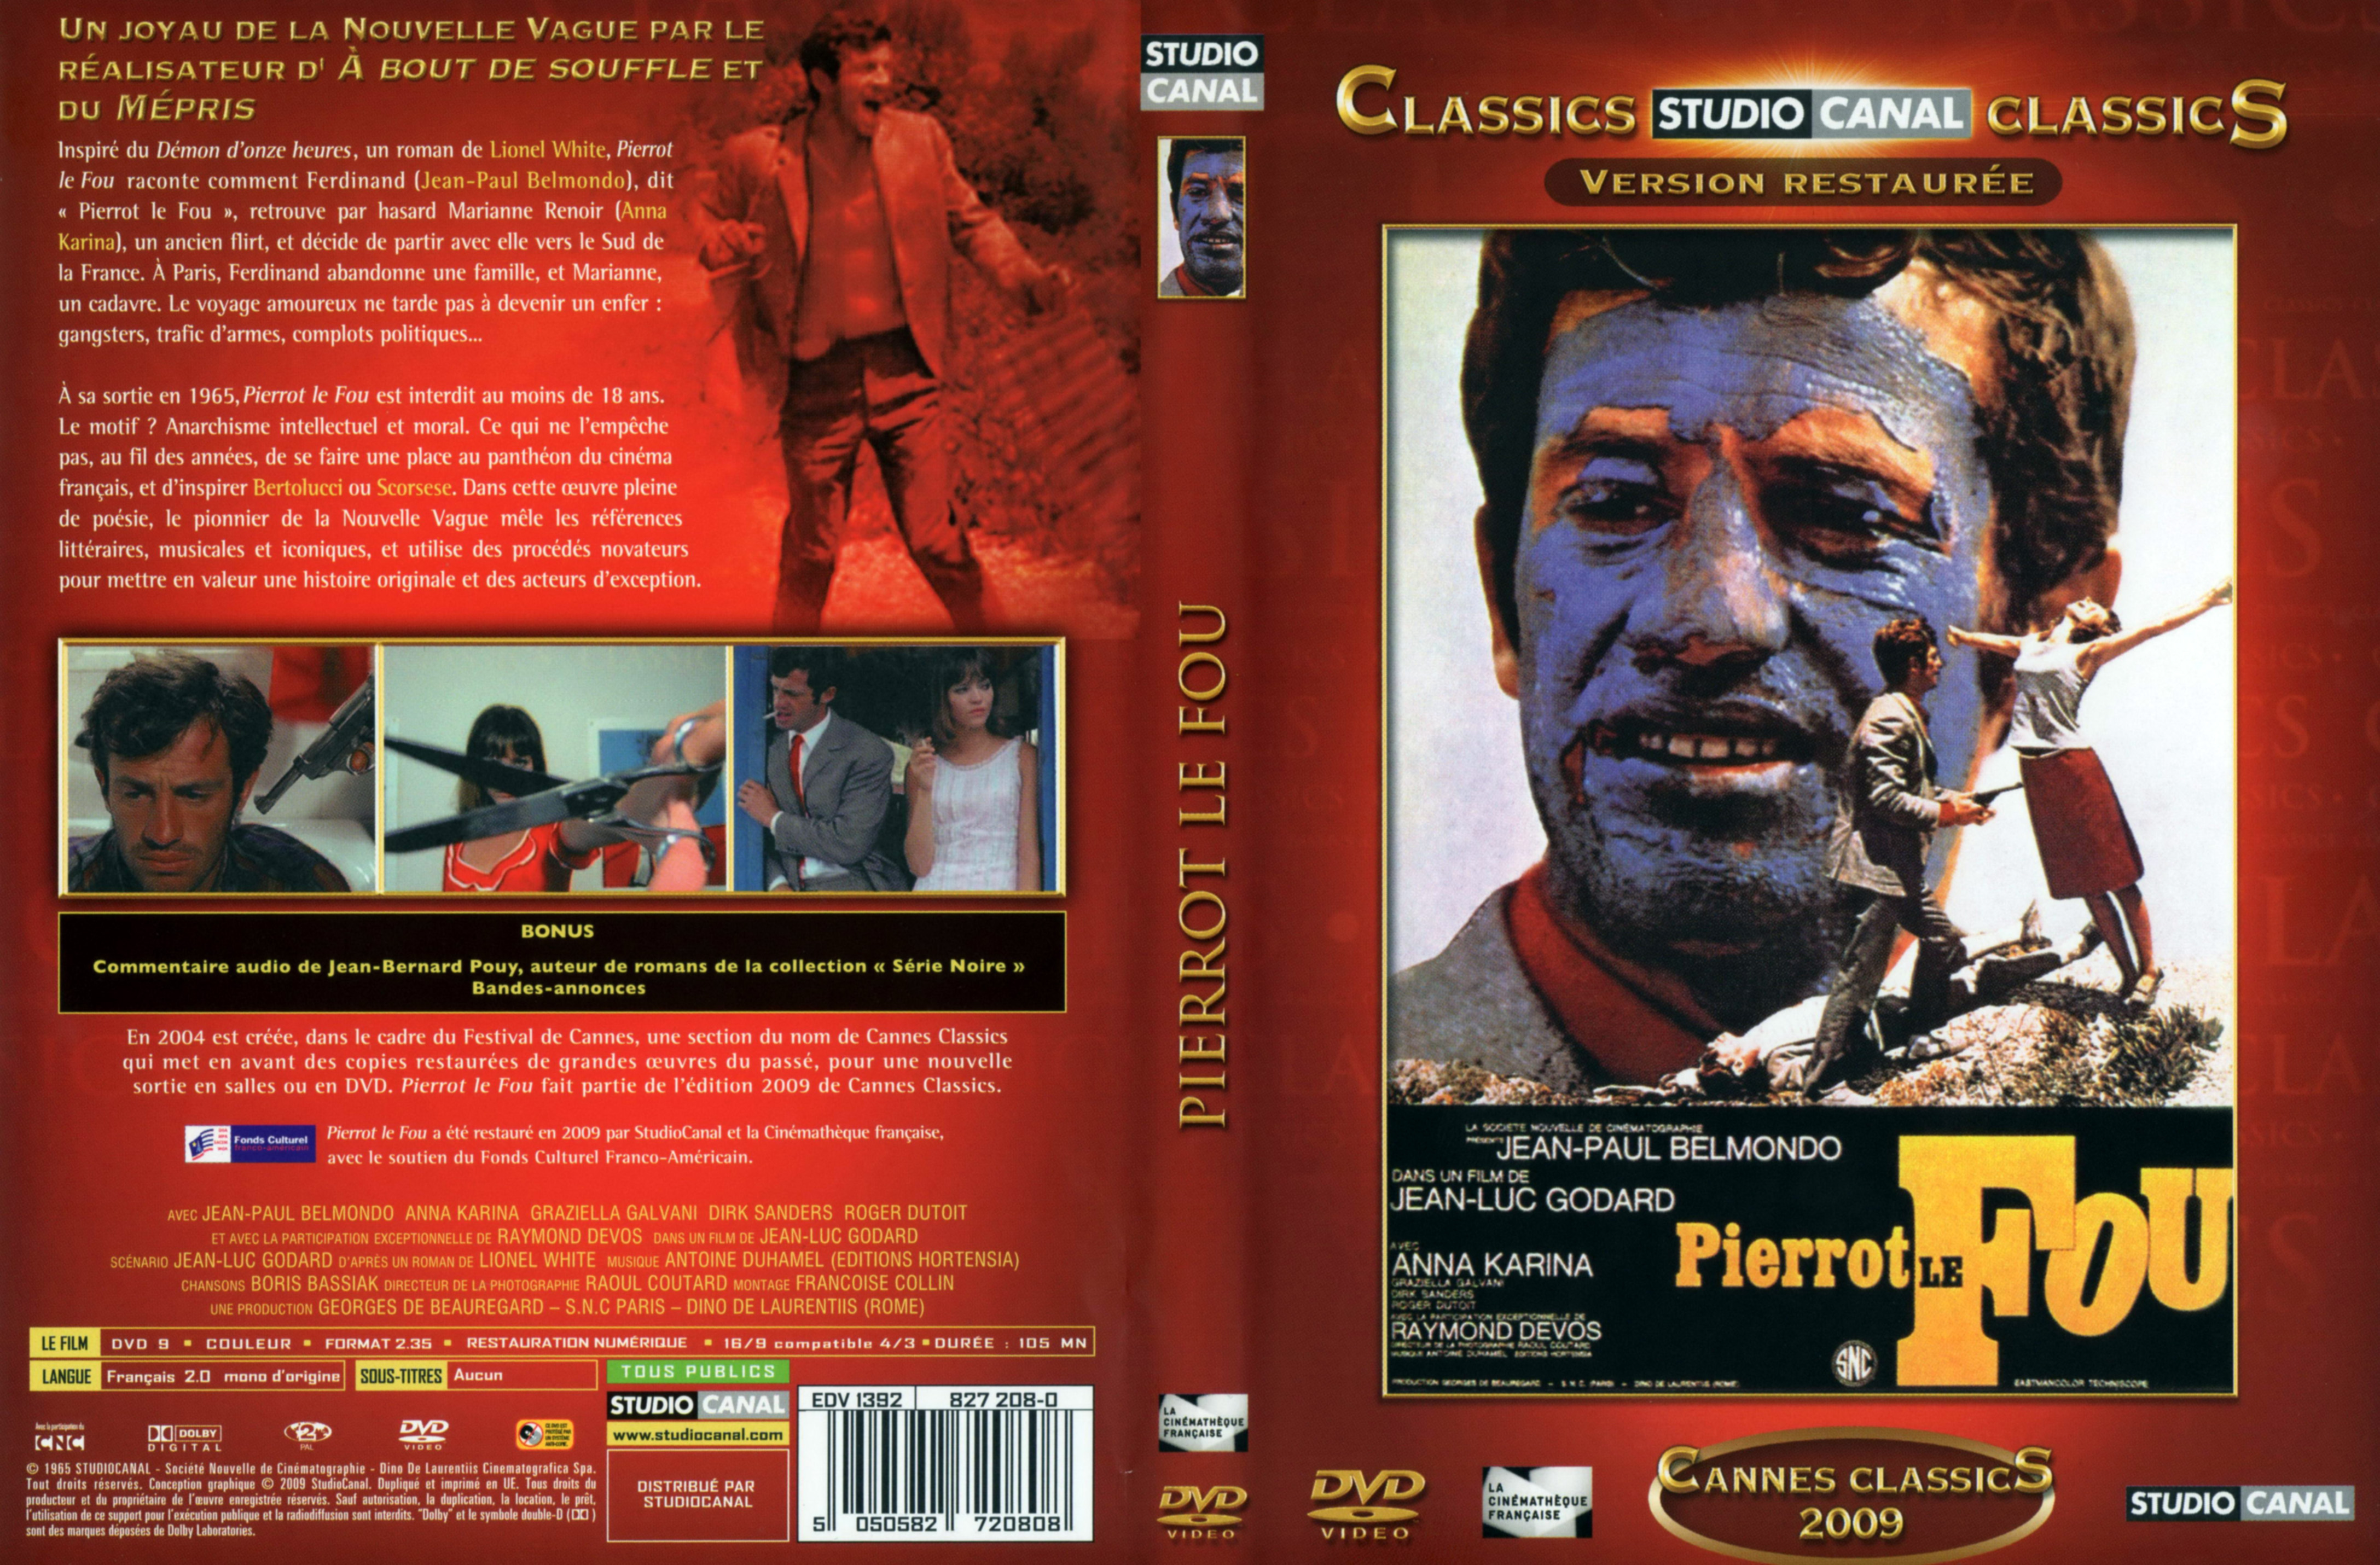 Jaquette DVD Pierrot le fou v2